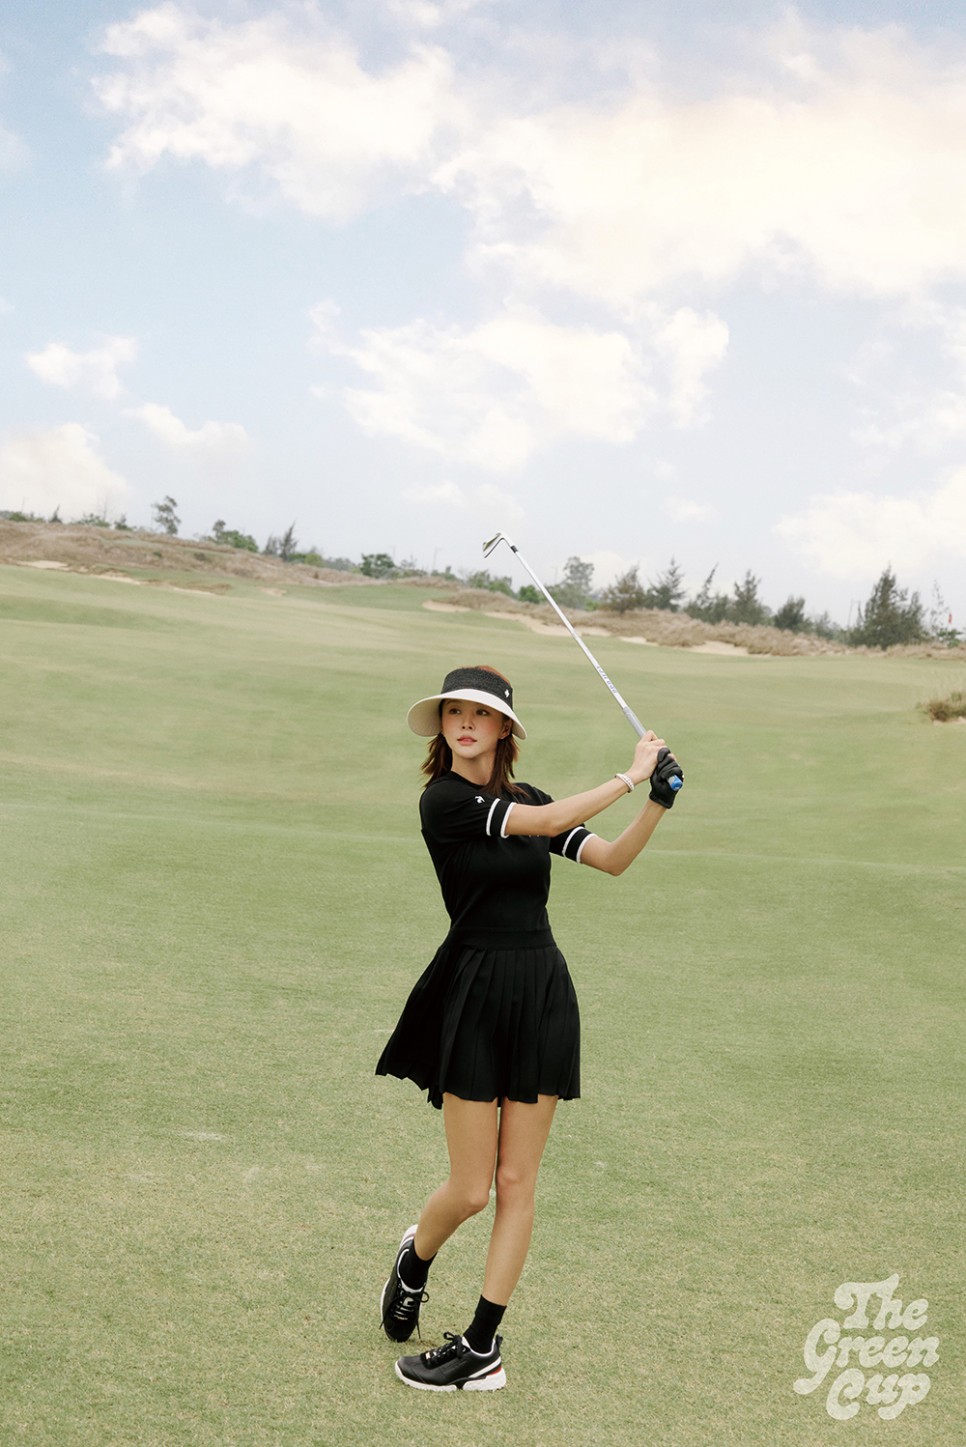 임블리 화보 패션 속 여성 골프웨어 봄 라운딩룩 르꼬끄골프 플리츠 스커트, 반팔 니트, 모자까지 모두 굿!